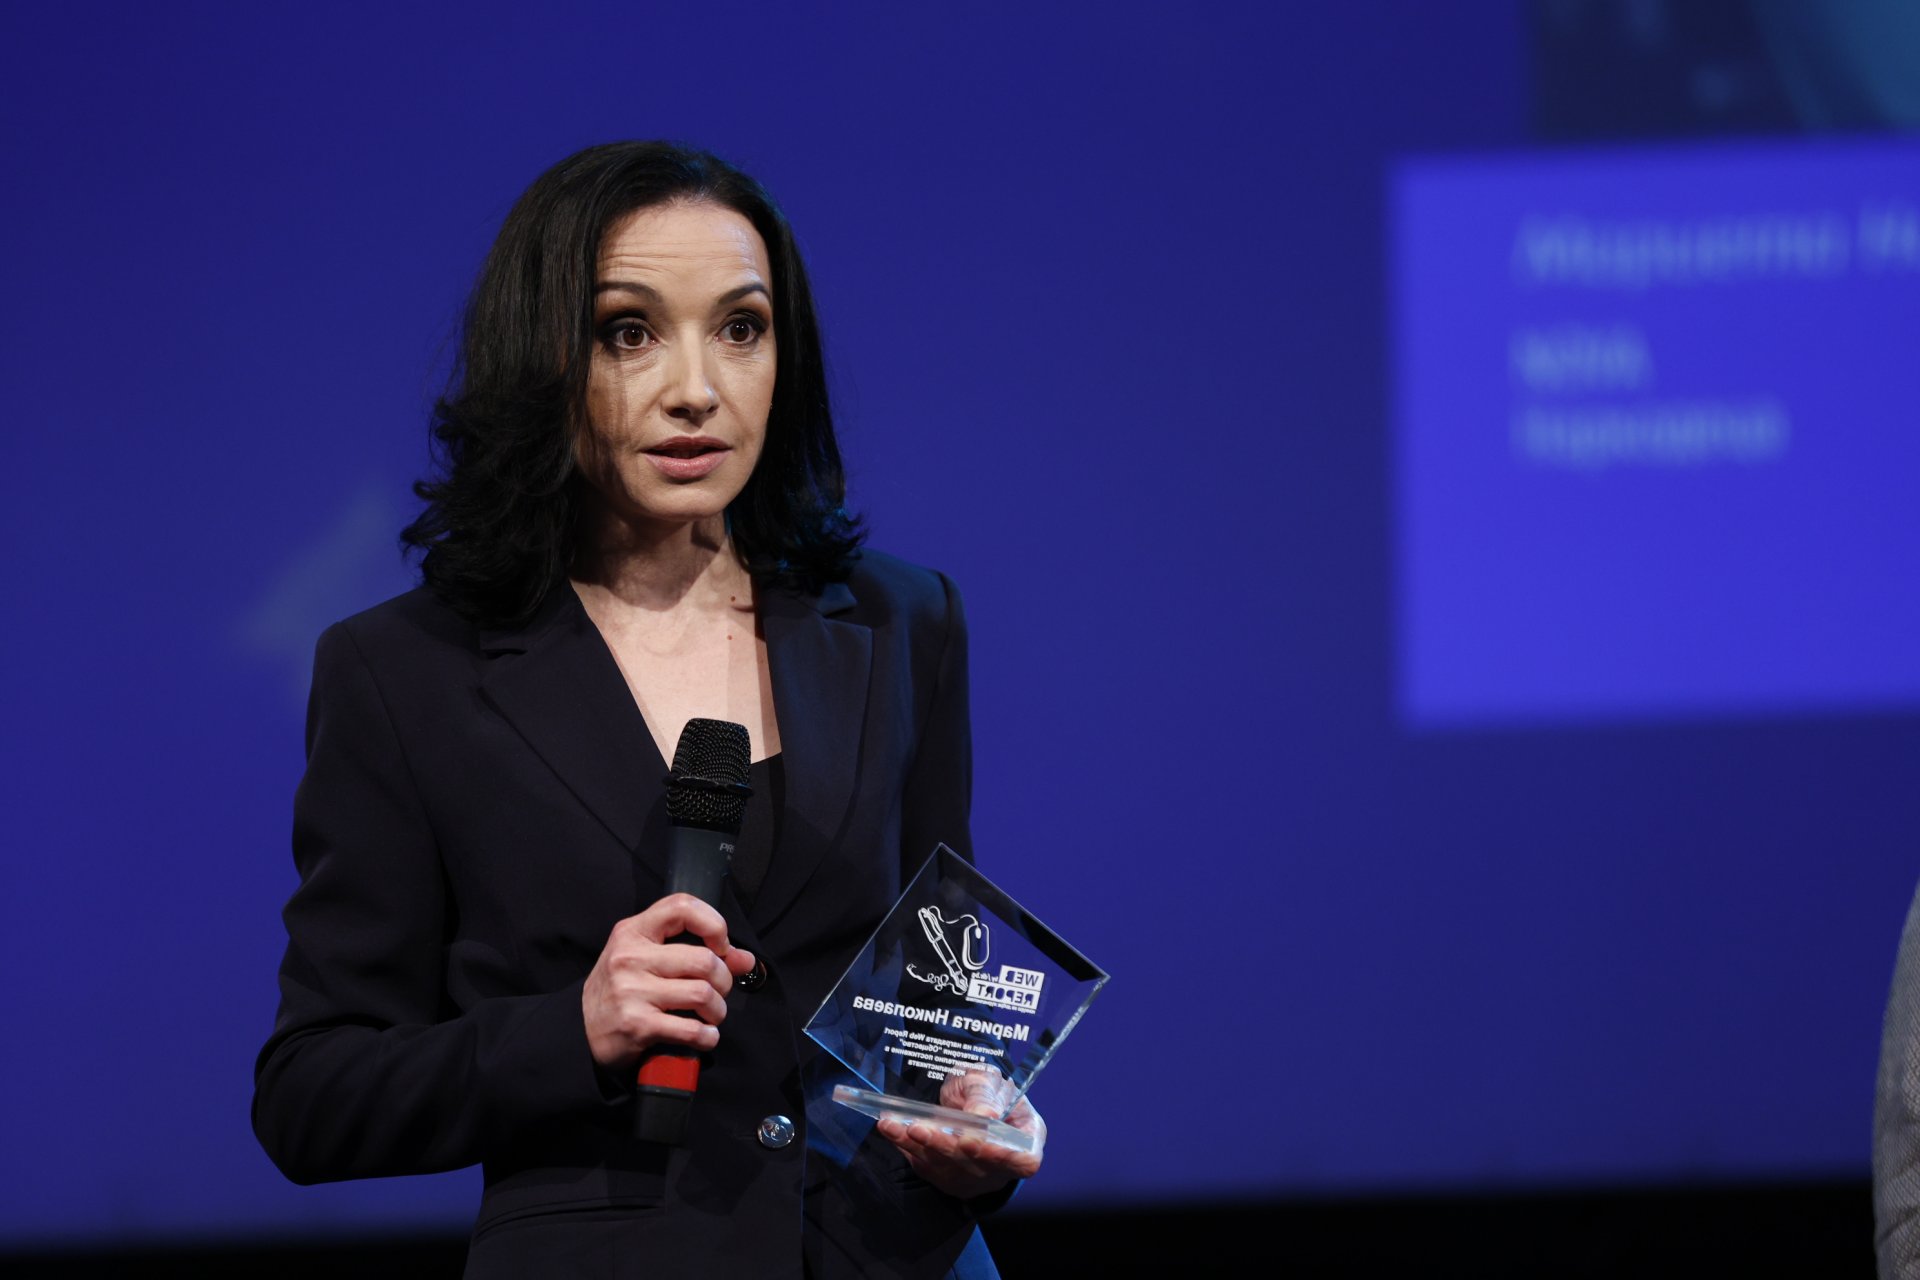 Победител в категория "Общество" стана журналистката от Нова телевизия Мариета Николаева